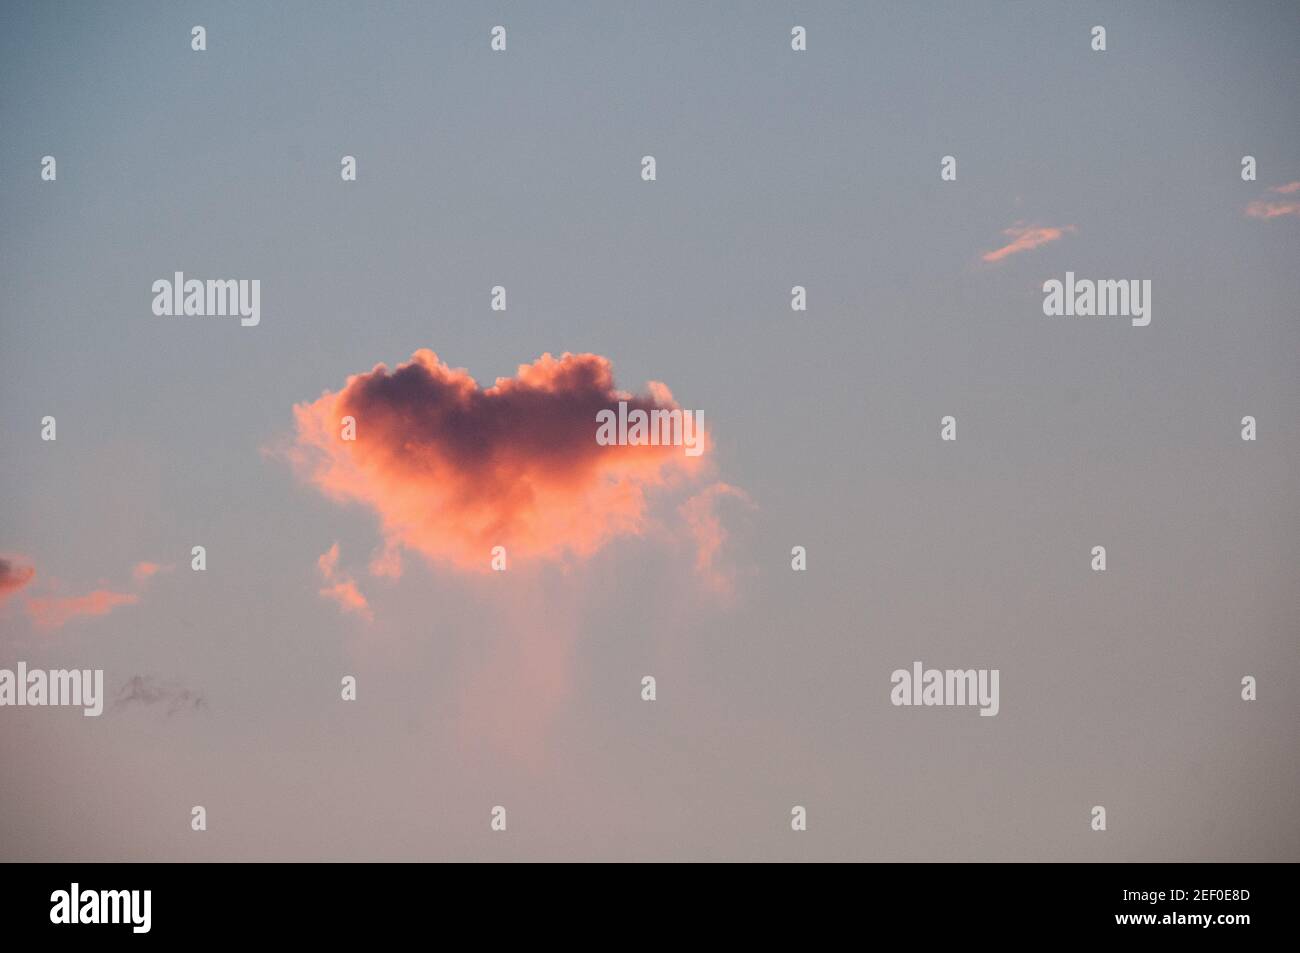 Nuvola rosa a forma di cuore nel cielo Foto Stock